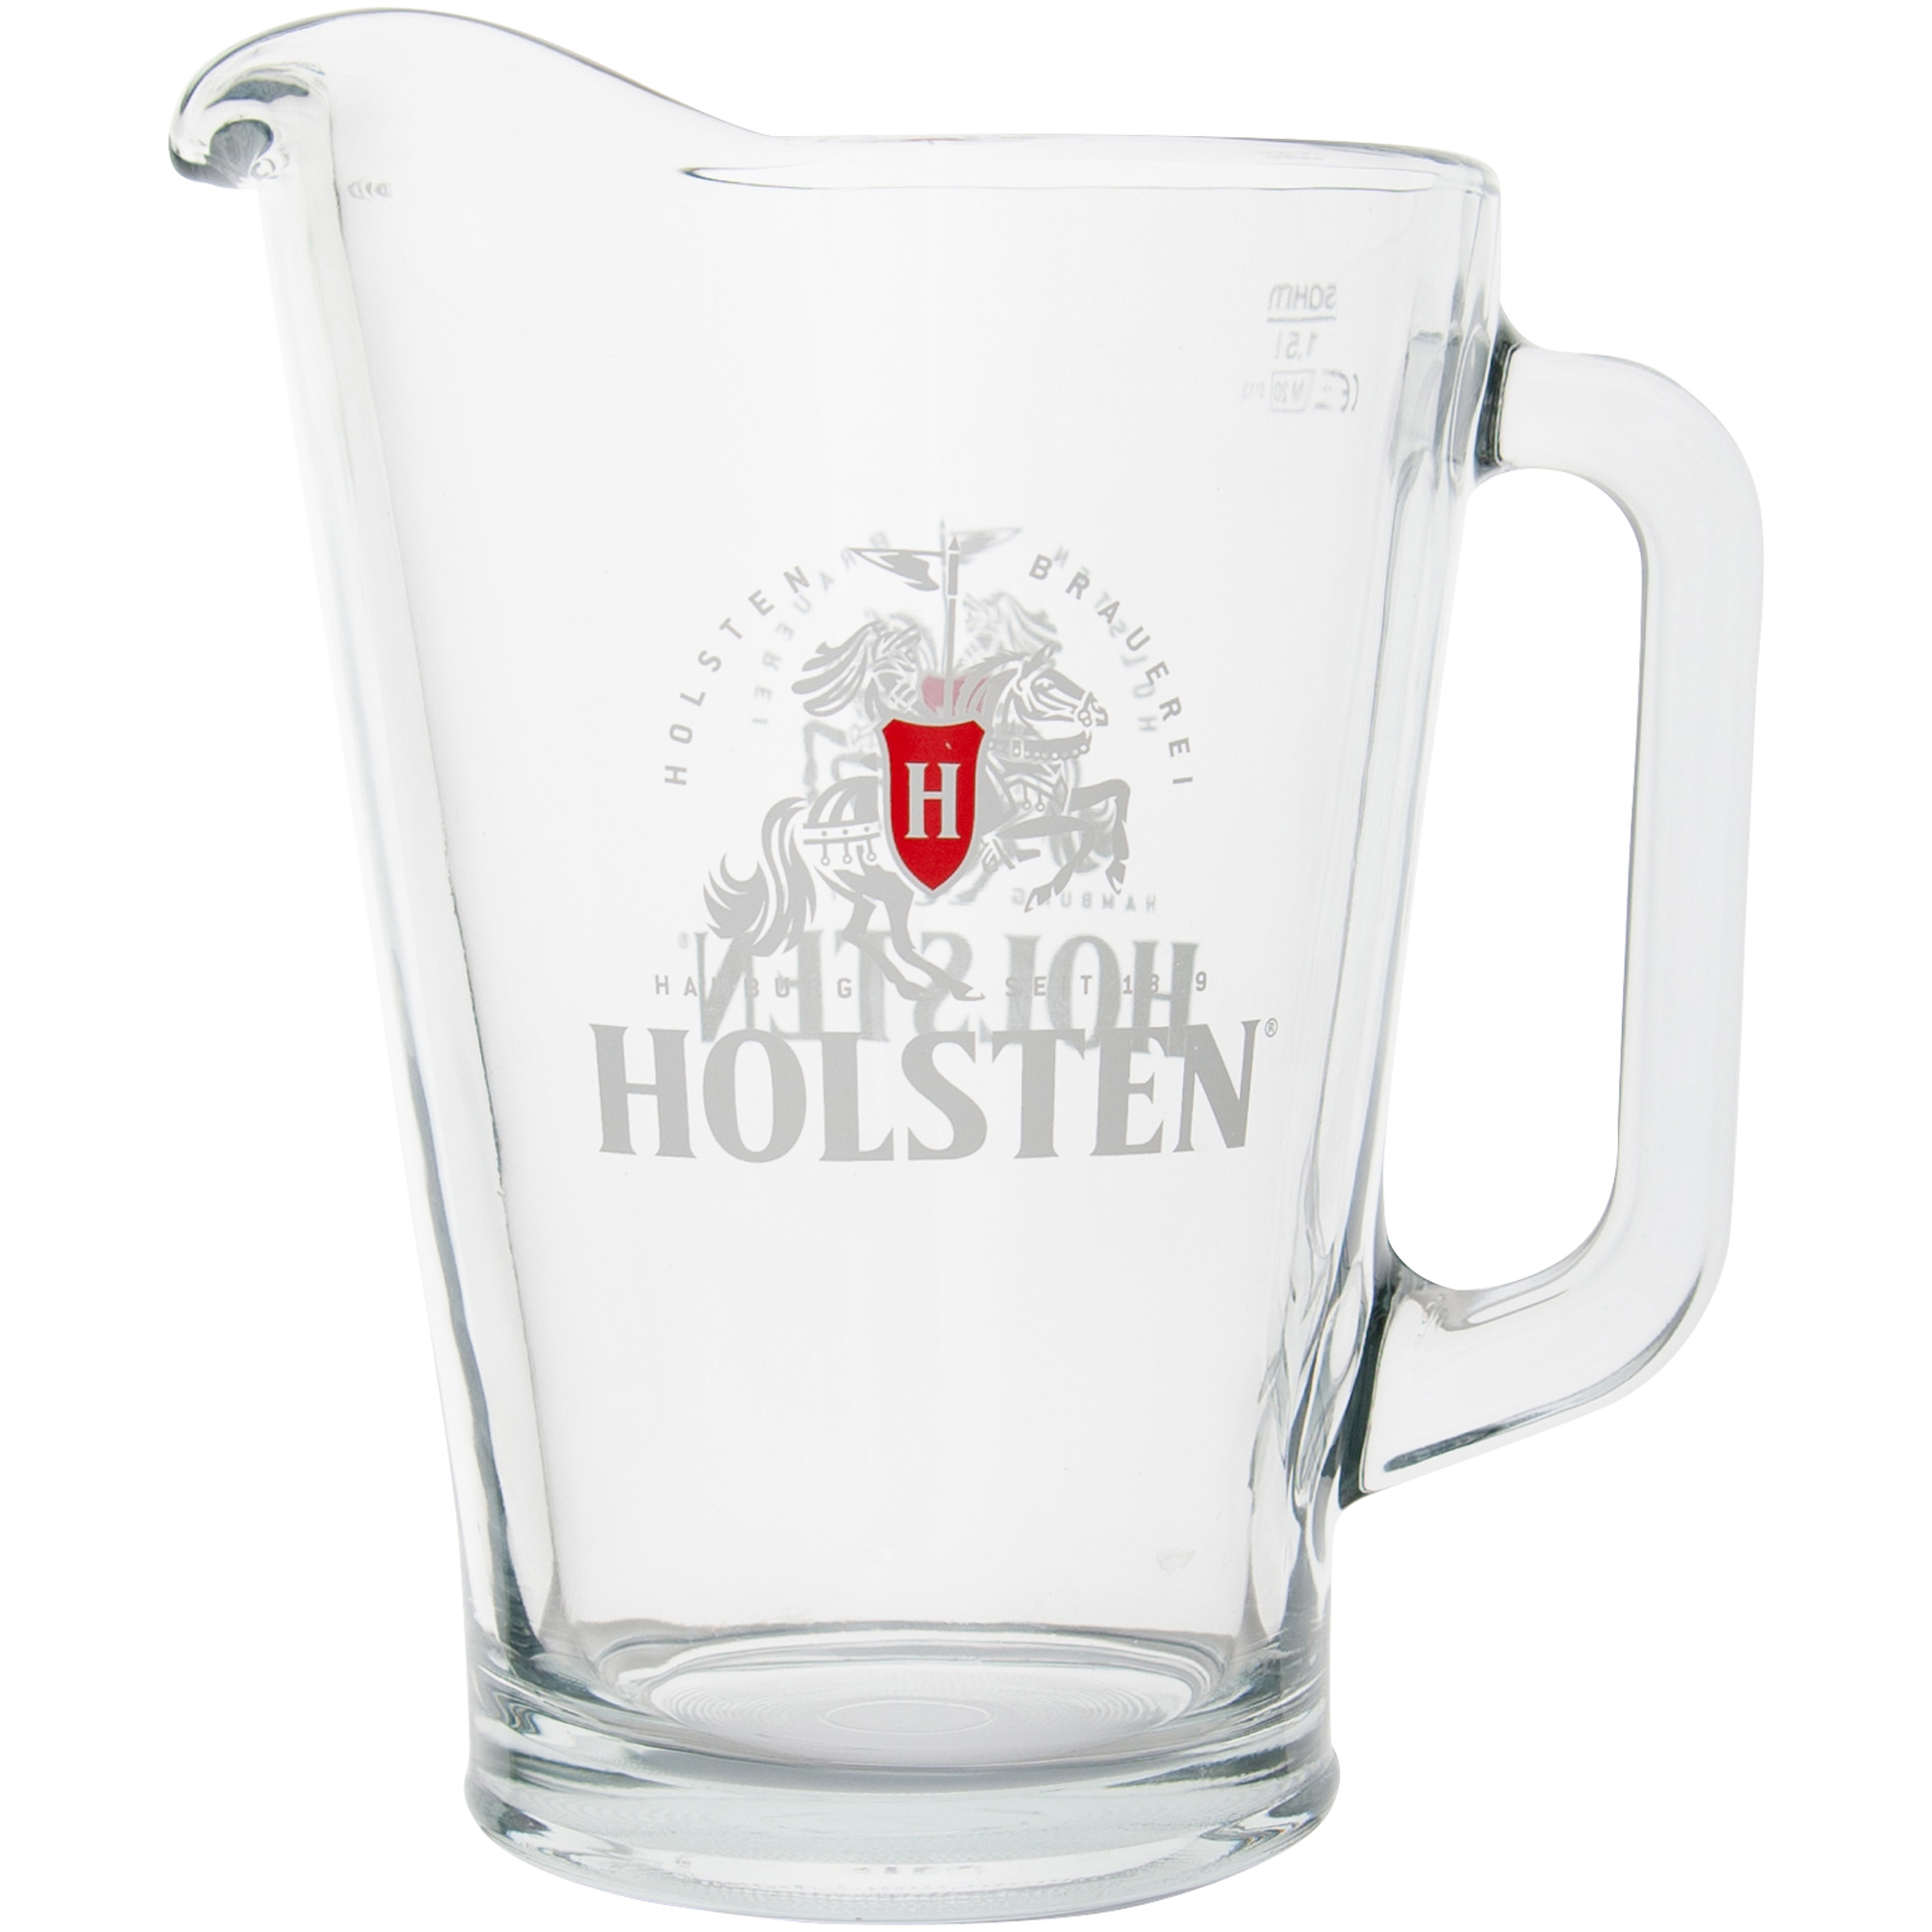 Holsten - Pitcher - 1.5 Liter